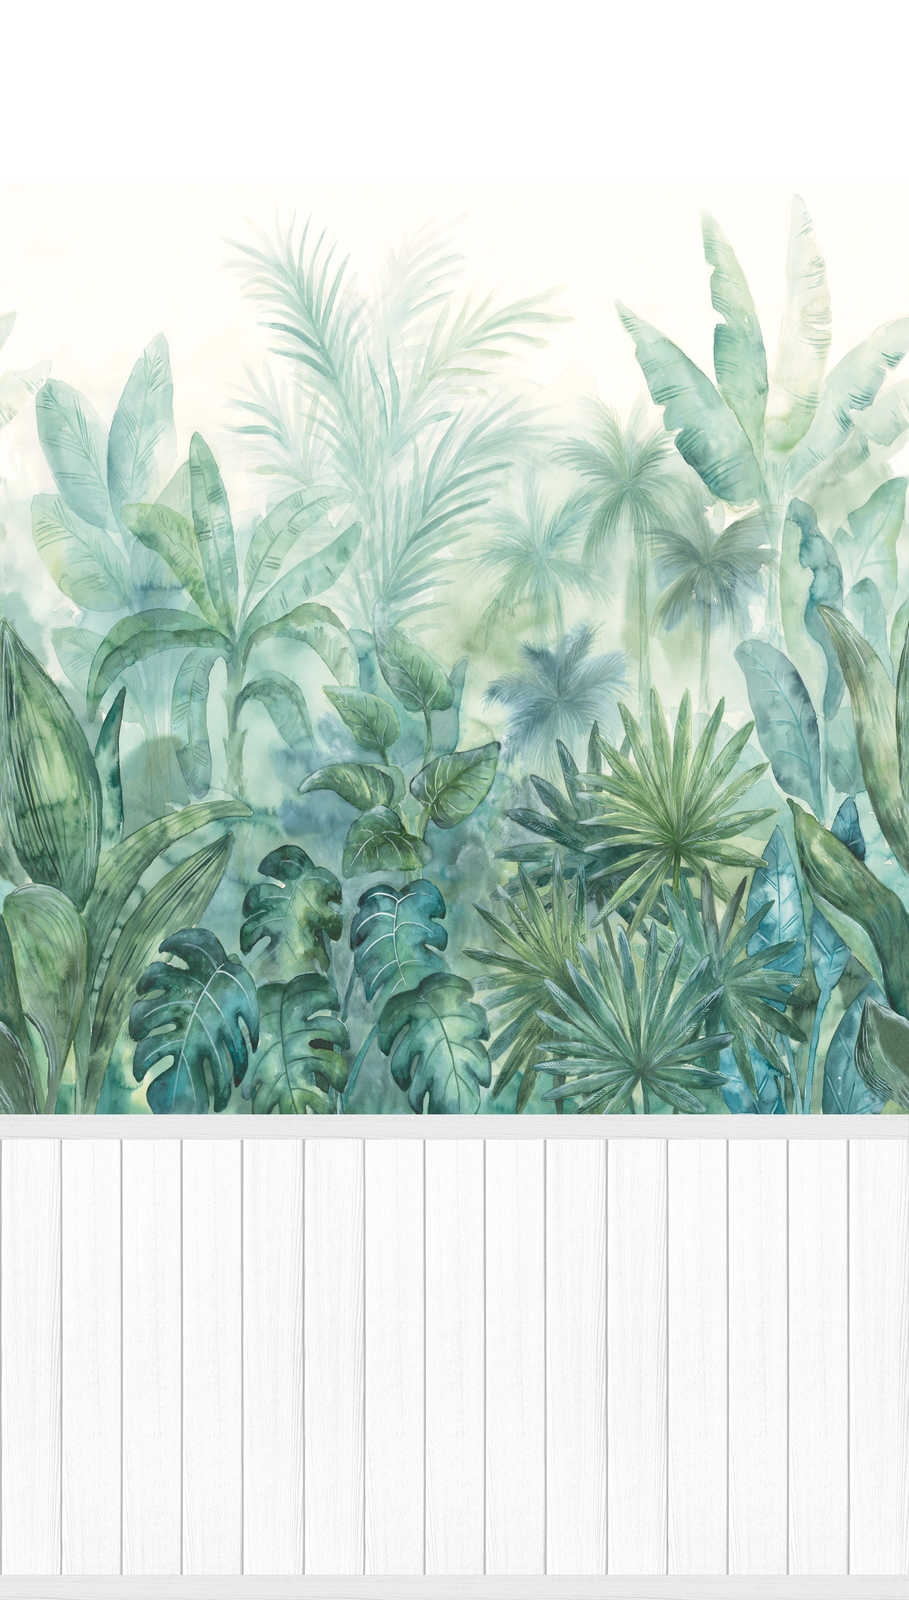             papier peint en papier intissé à motifs avec bordure de plinthe imitation bois et motif jungle - blanc, vert
        